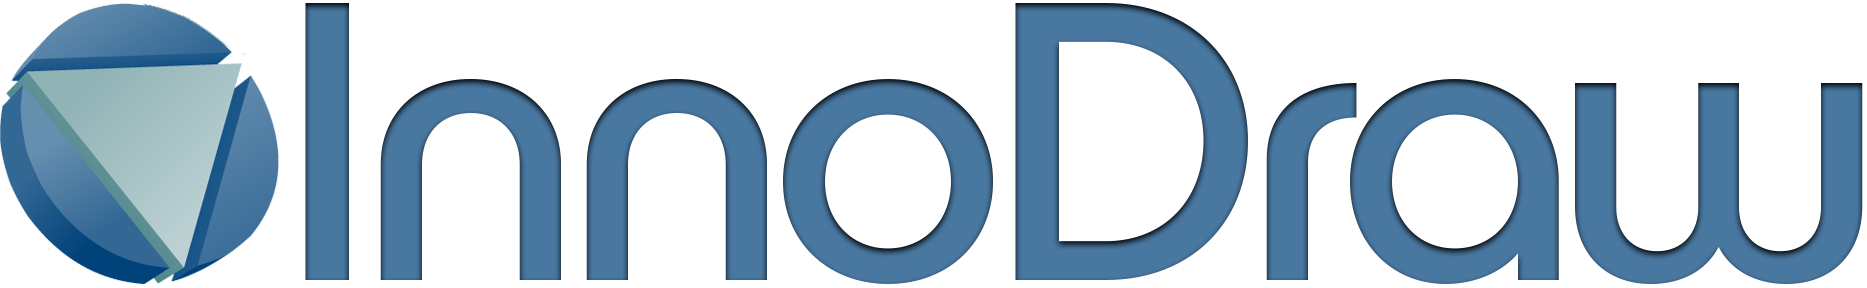 InnoDraw logo